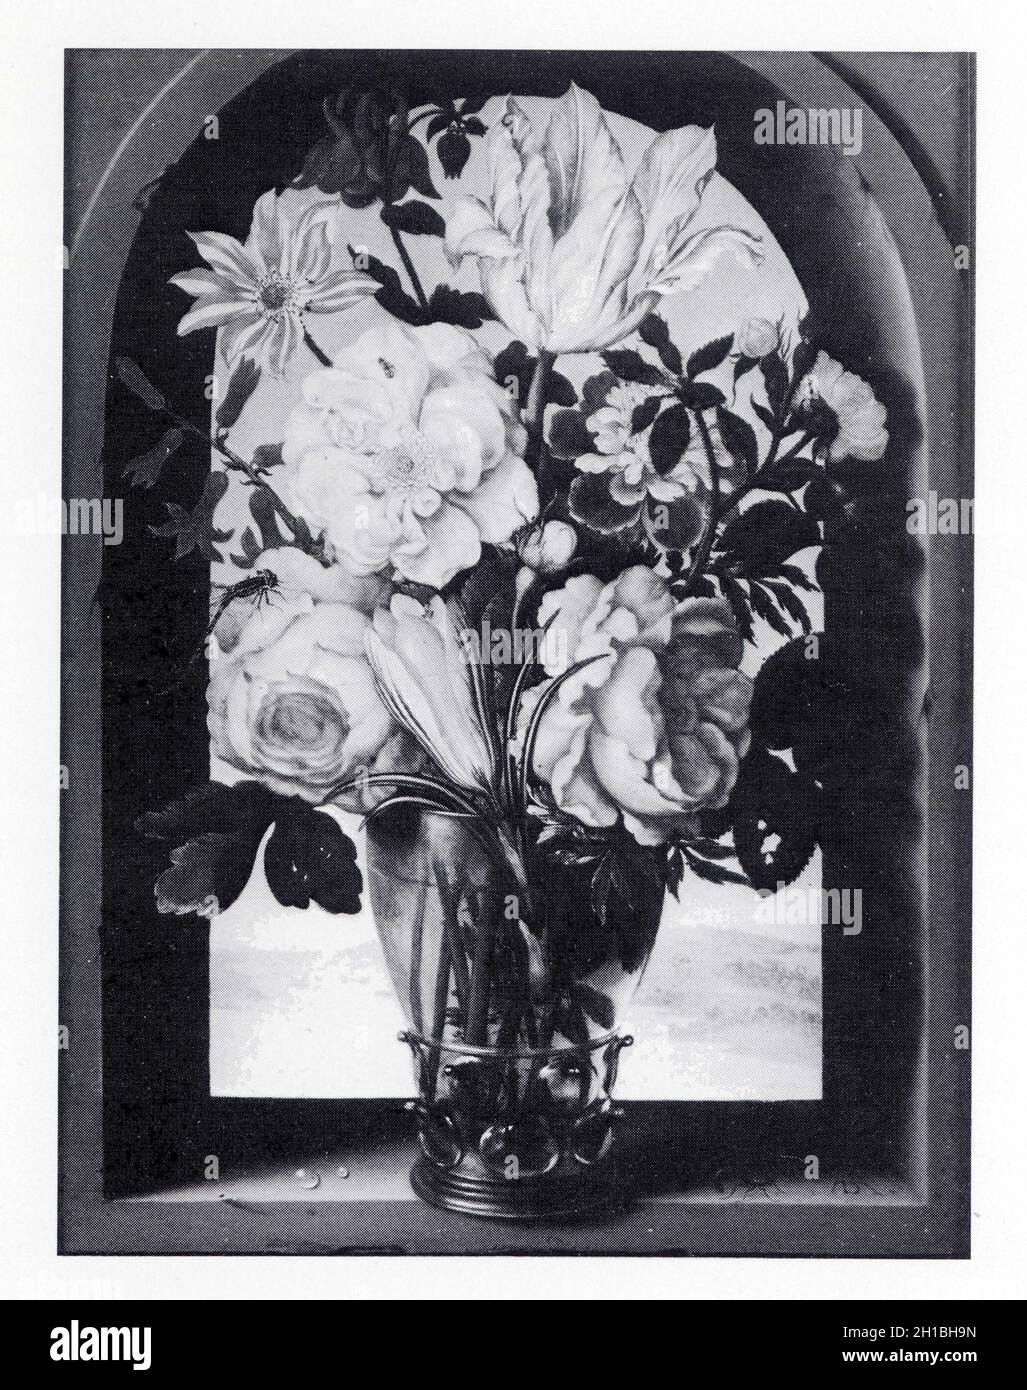 Ambrosius Bosschaert, Le Vieux. 1573-1621. Bouquet de fleurs dans une arcature de pierre s'ouvrant sur un paysage. Stock Photo